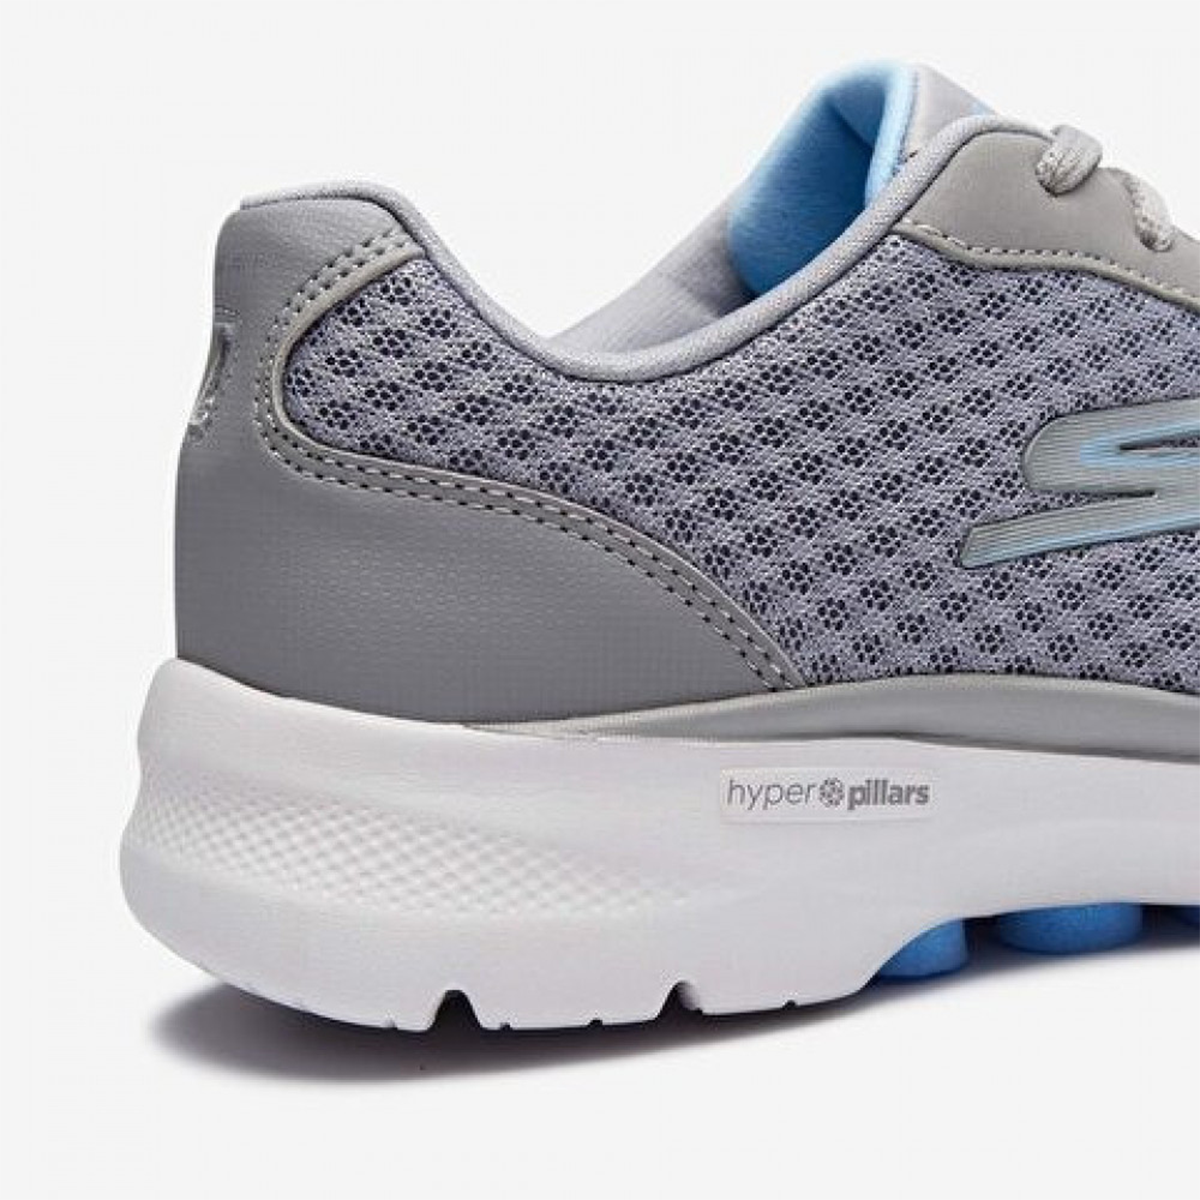 Skechers Go Walk 6 Shoes For Women, Grey & Blue